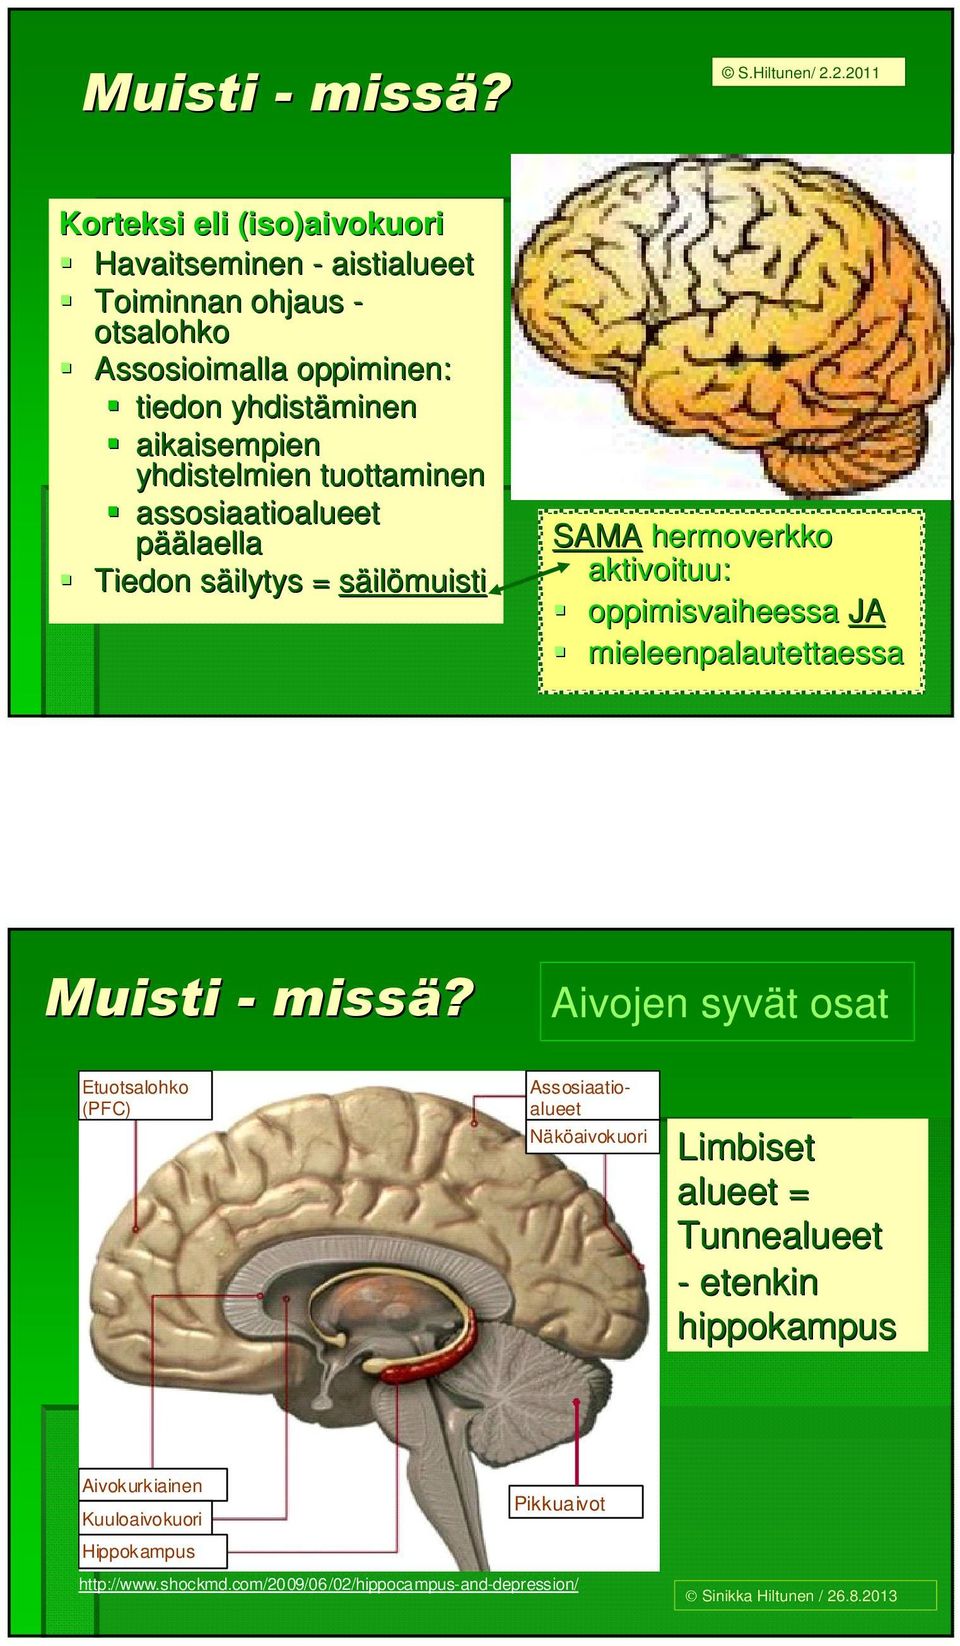 yhdistelmien tuottaminen assosiaatioalueet päälaella Tiedon säilytys s = säilömuisti SAMA hermoverkko aktivoituu: oppimisvaiheessa JA